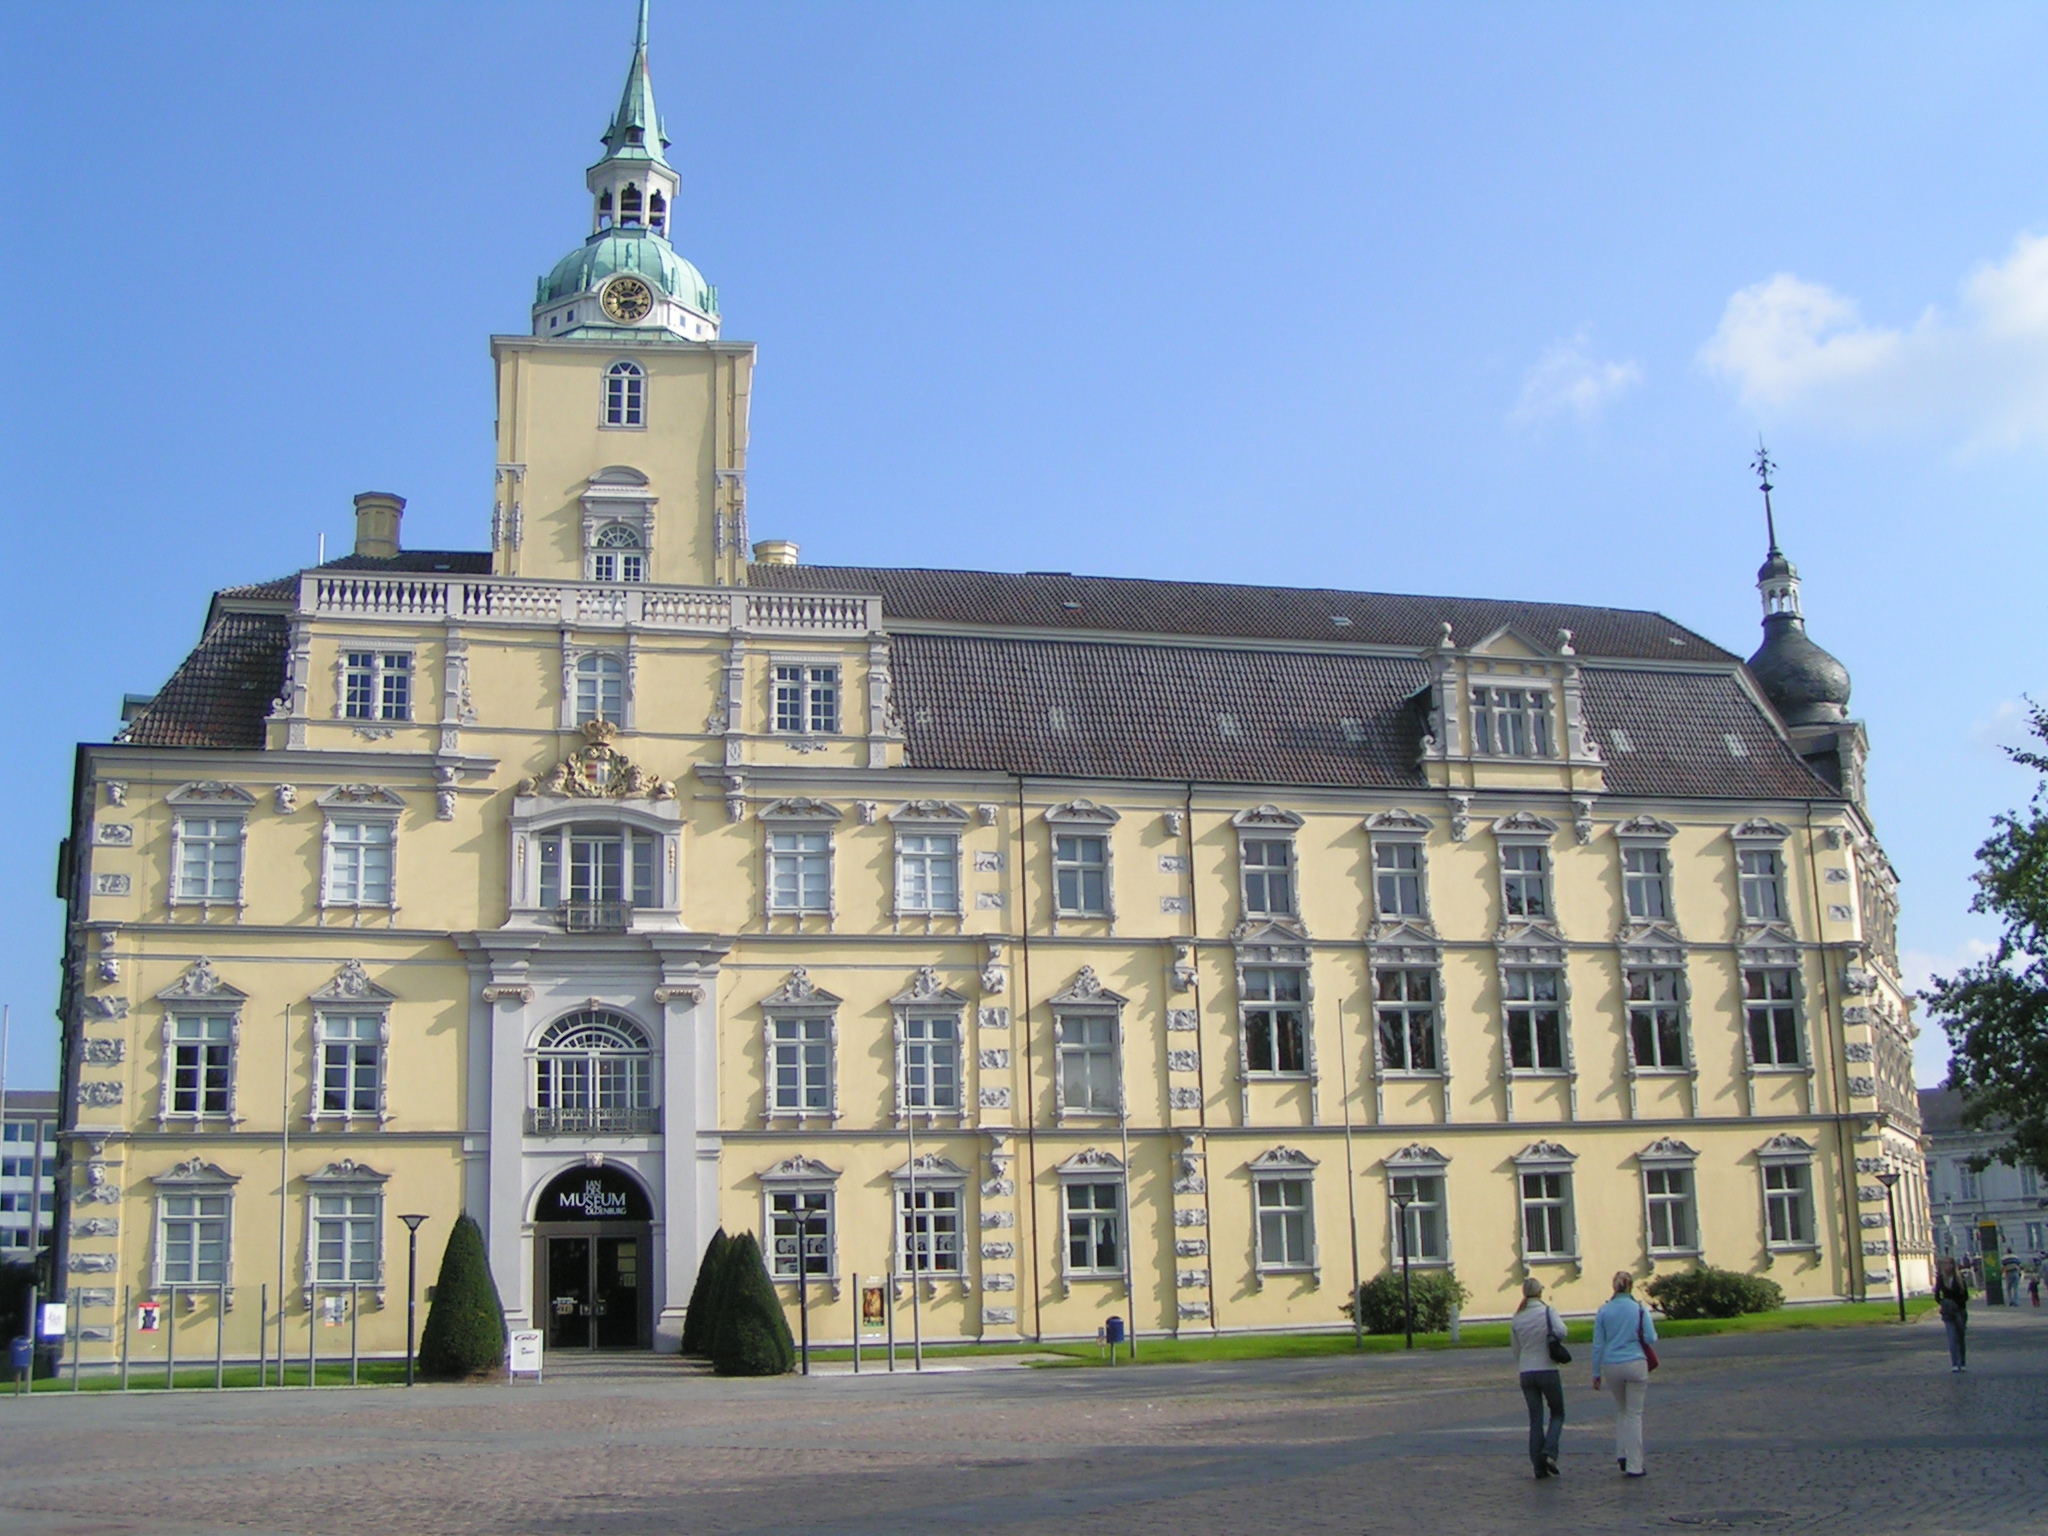 Oldenburger Schloss.
